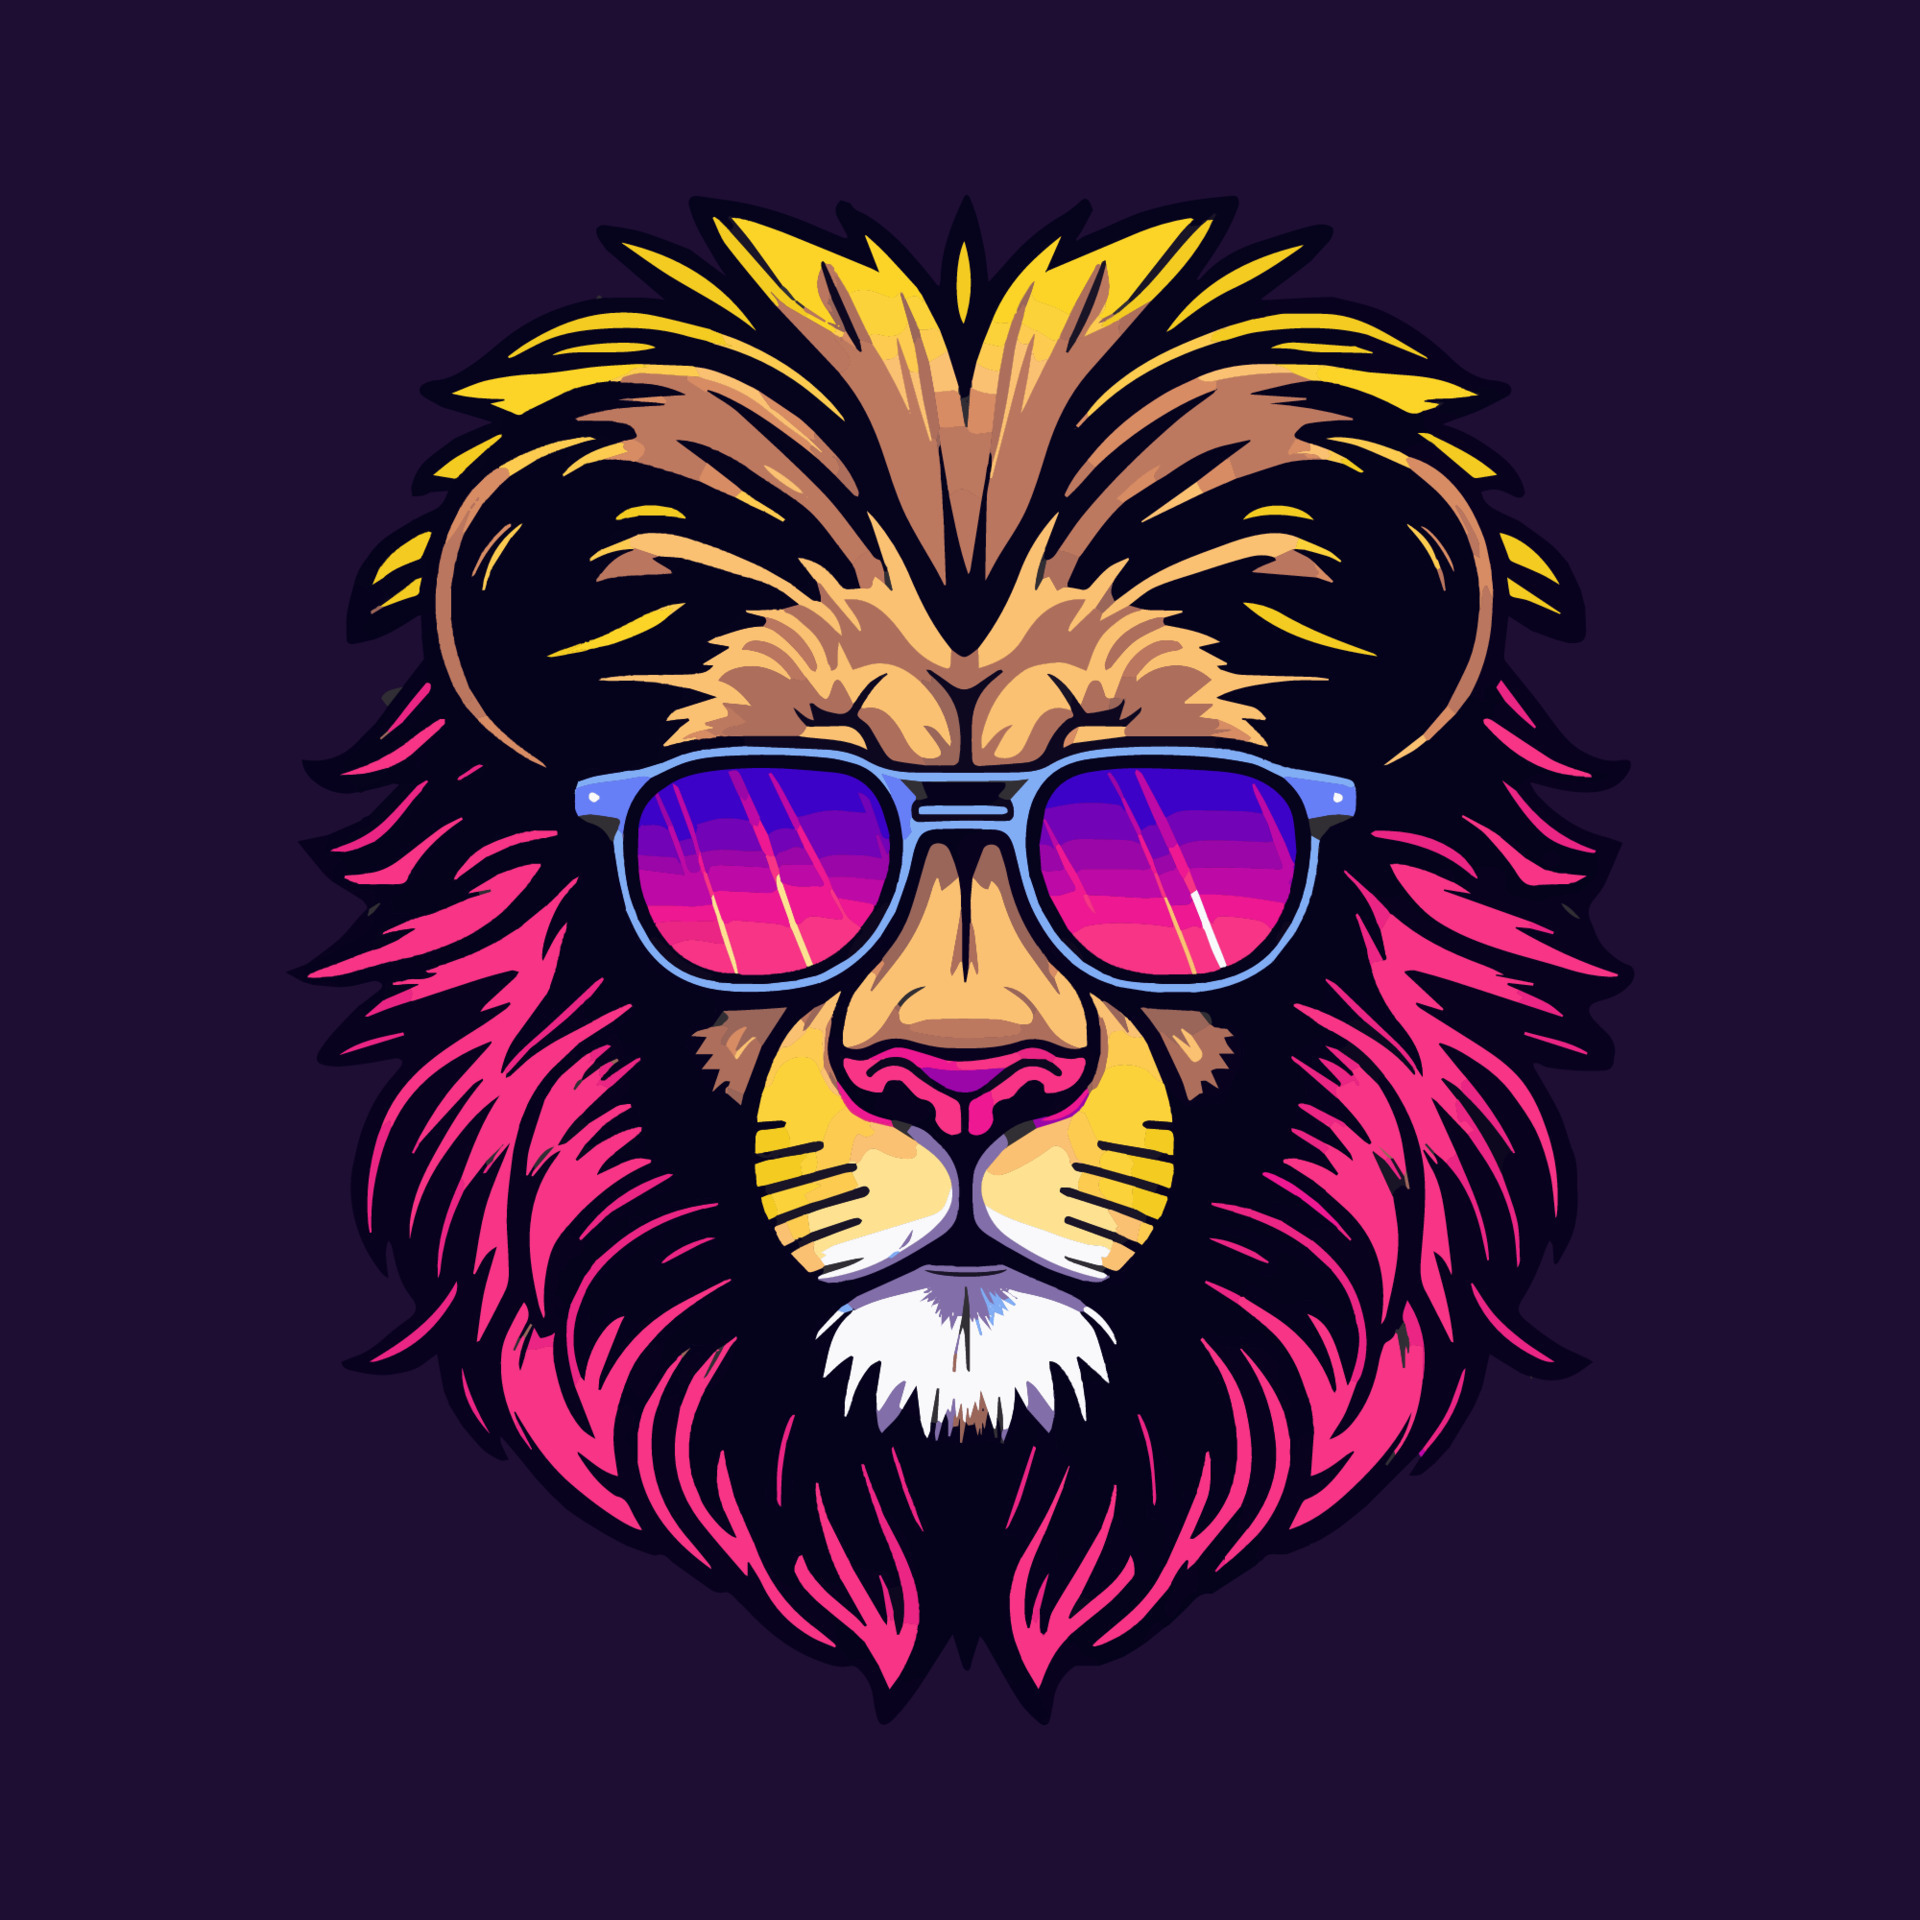 Lions Head mascot logo design illustration for sport or e-sport ...